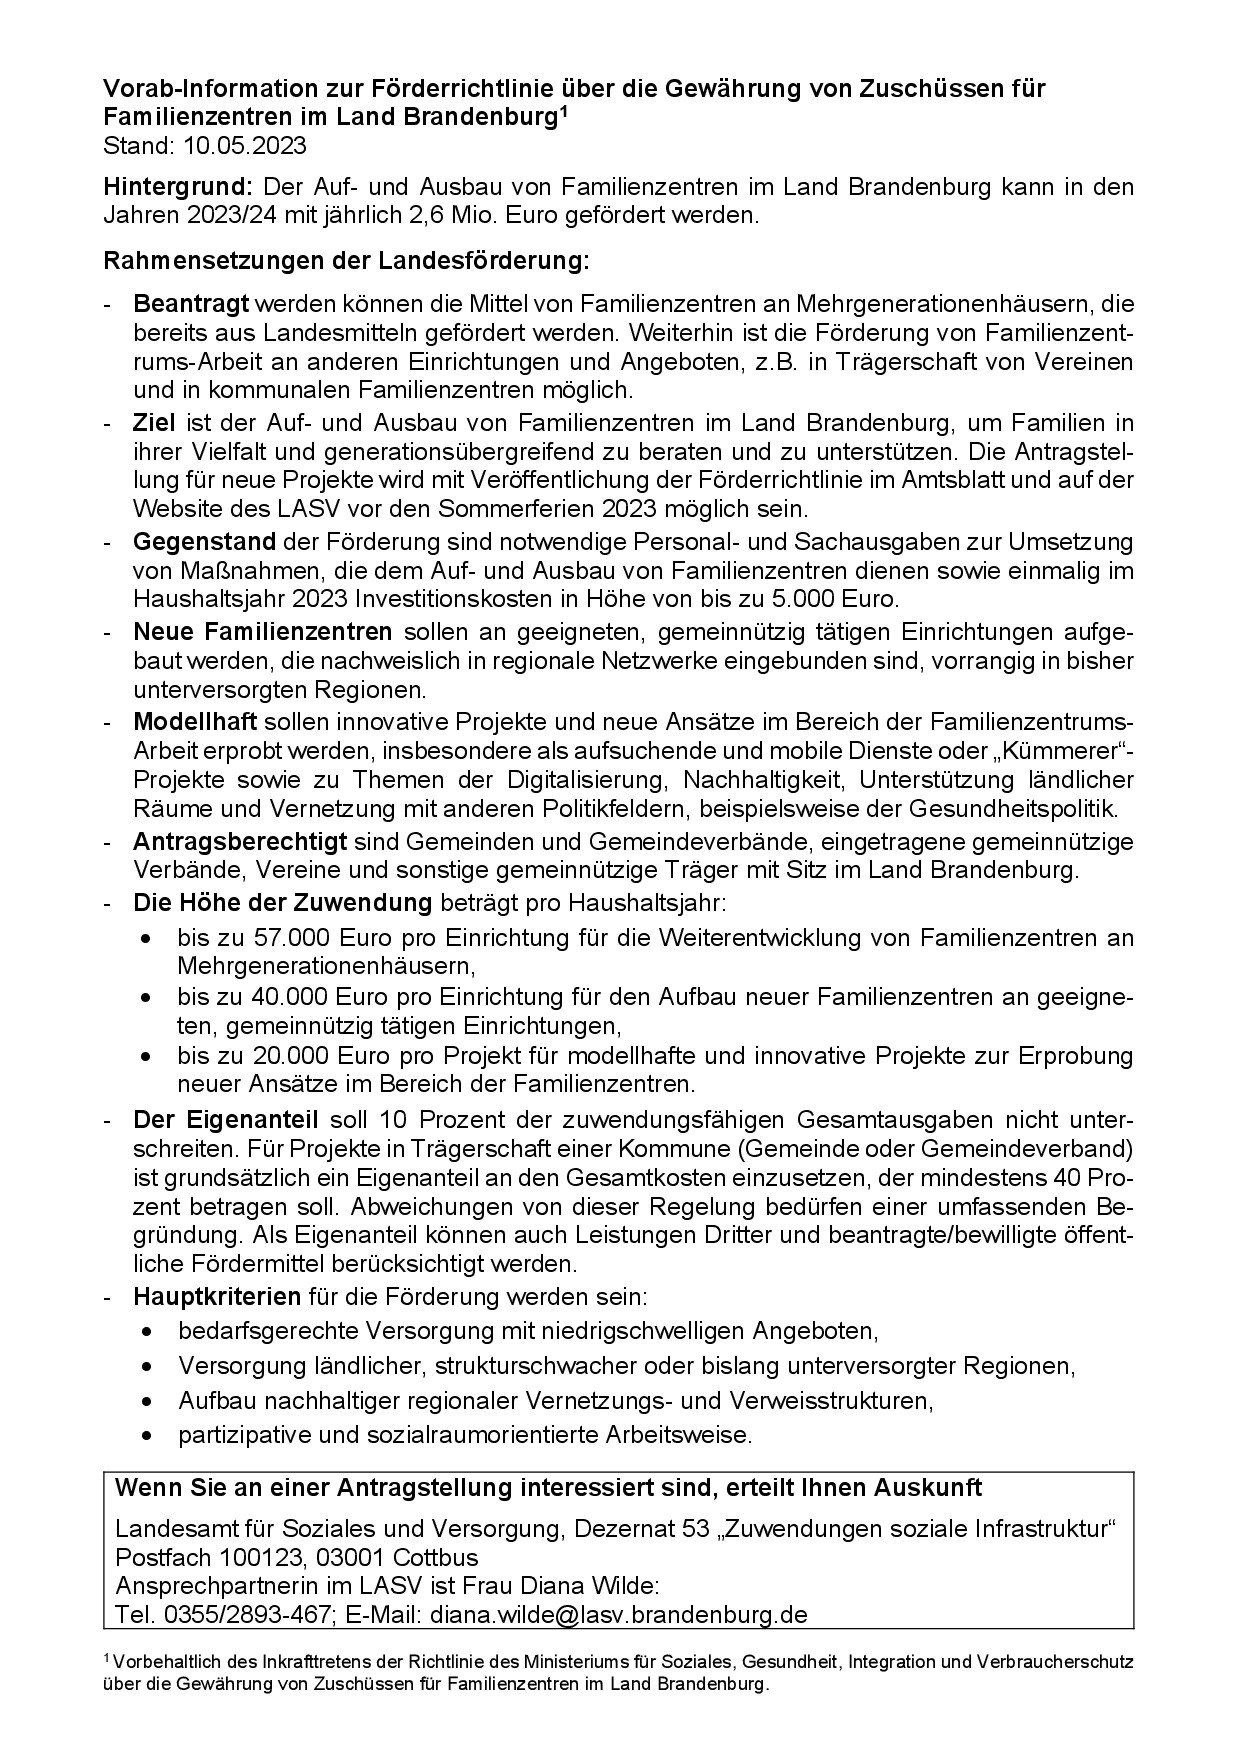 Bild vergrößern (Bild: Vorab-Information zur Förderrichtlinie über die Gewährung von Zuschüssen für Familienzentren im Land Brandenburg-001.jpg)